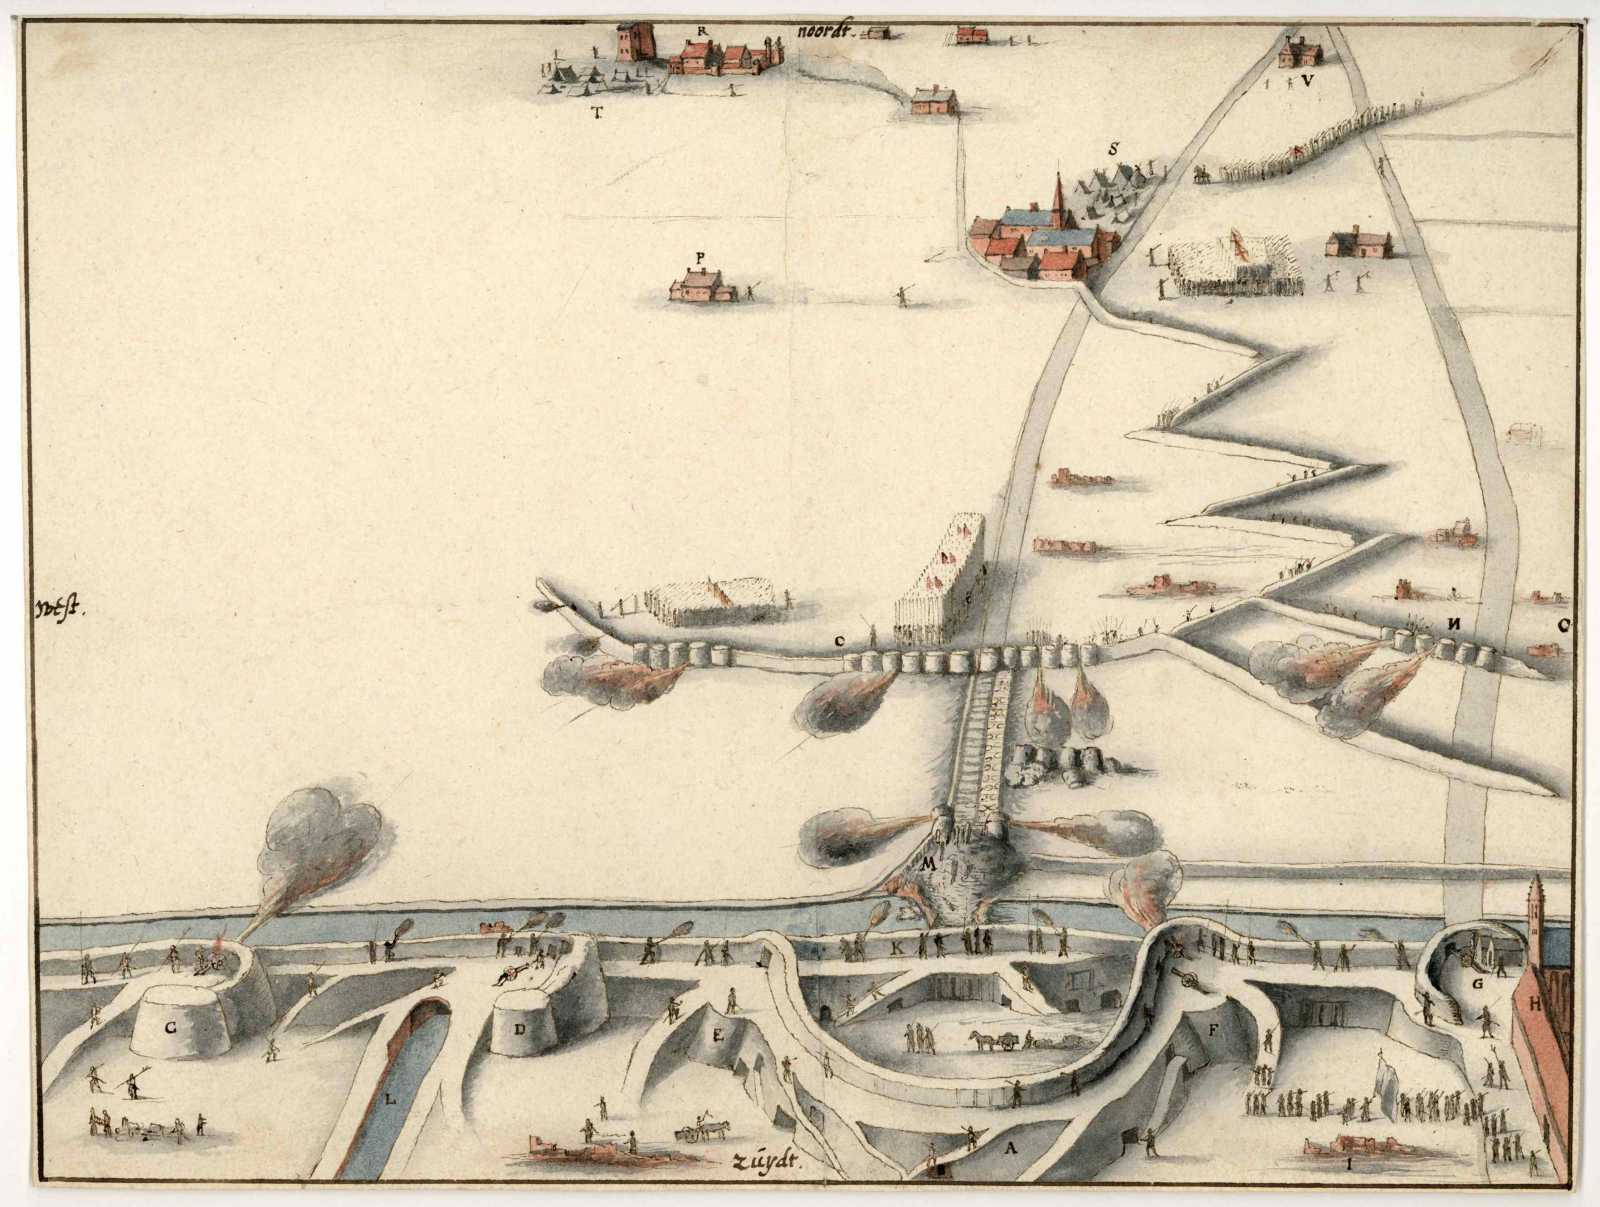 Tekening van de aanvals- en verdedigingswerken van de Spanjaarden en de Haarlemmers aan de noordzijde van de stad tijdens het Beleg van Haarlem. 